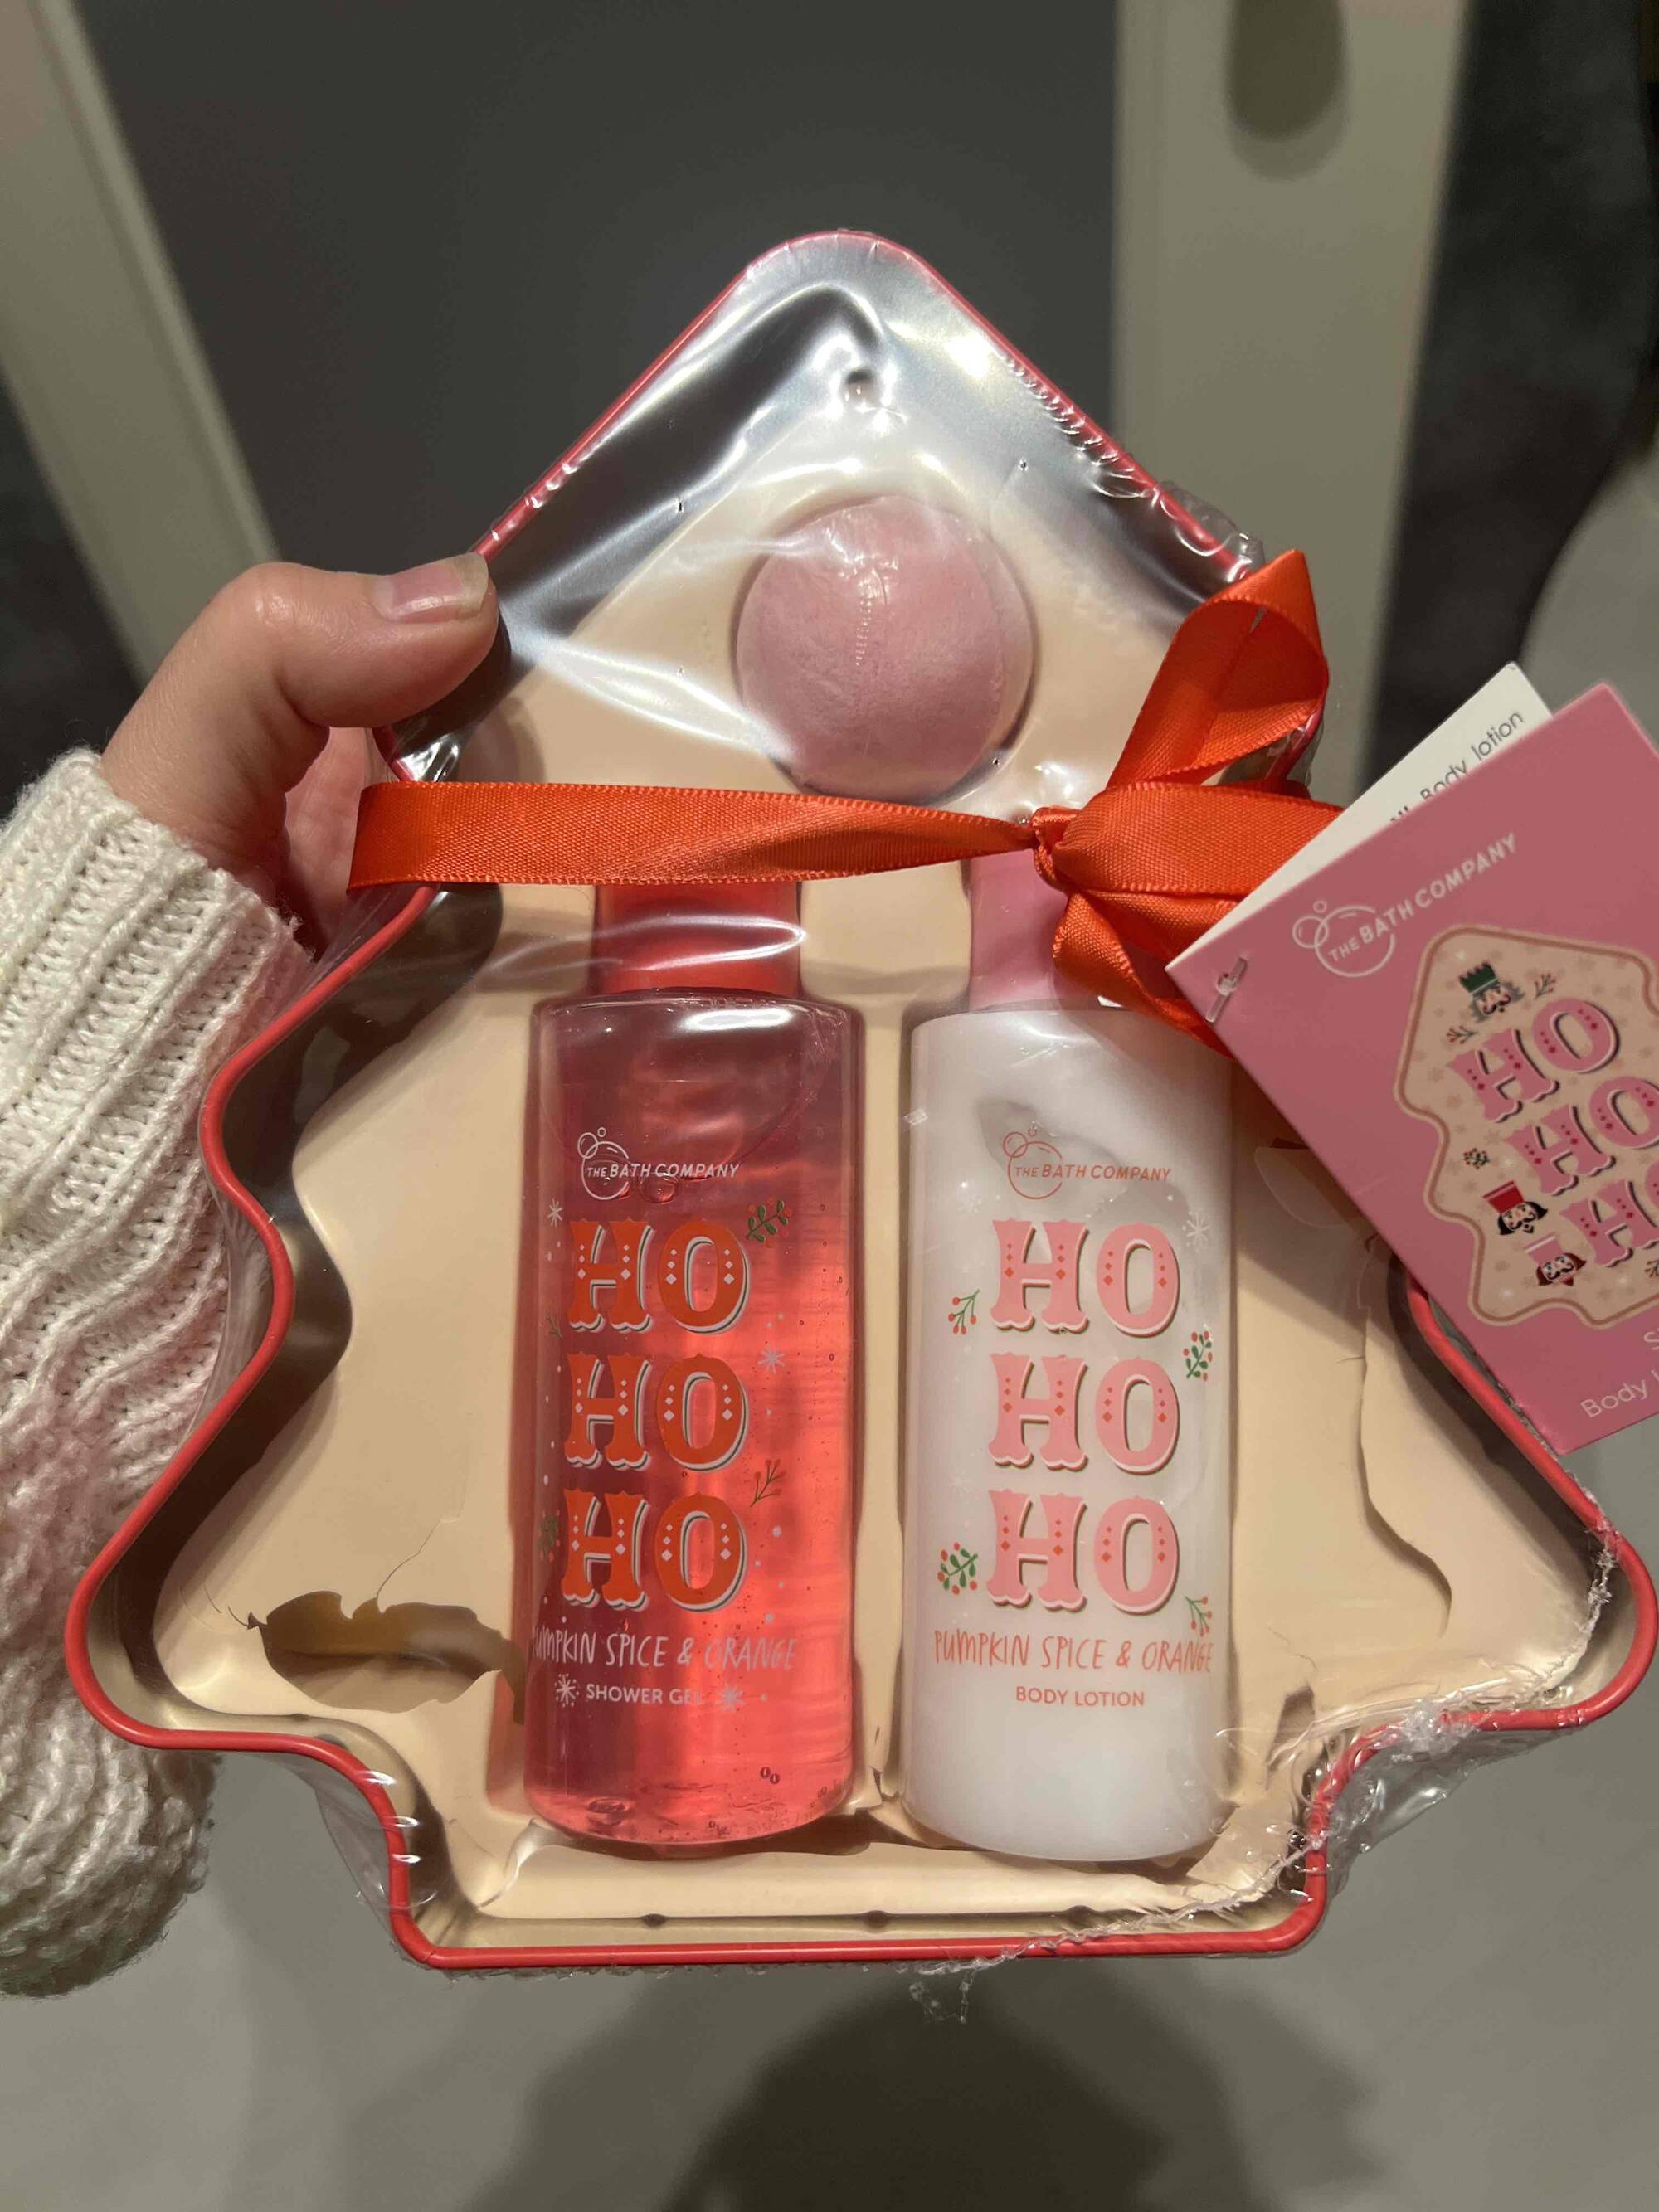 THE BATH COMPANY - Ho Ho Ho!!! - Shower gel & Body lotion